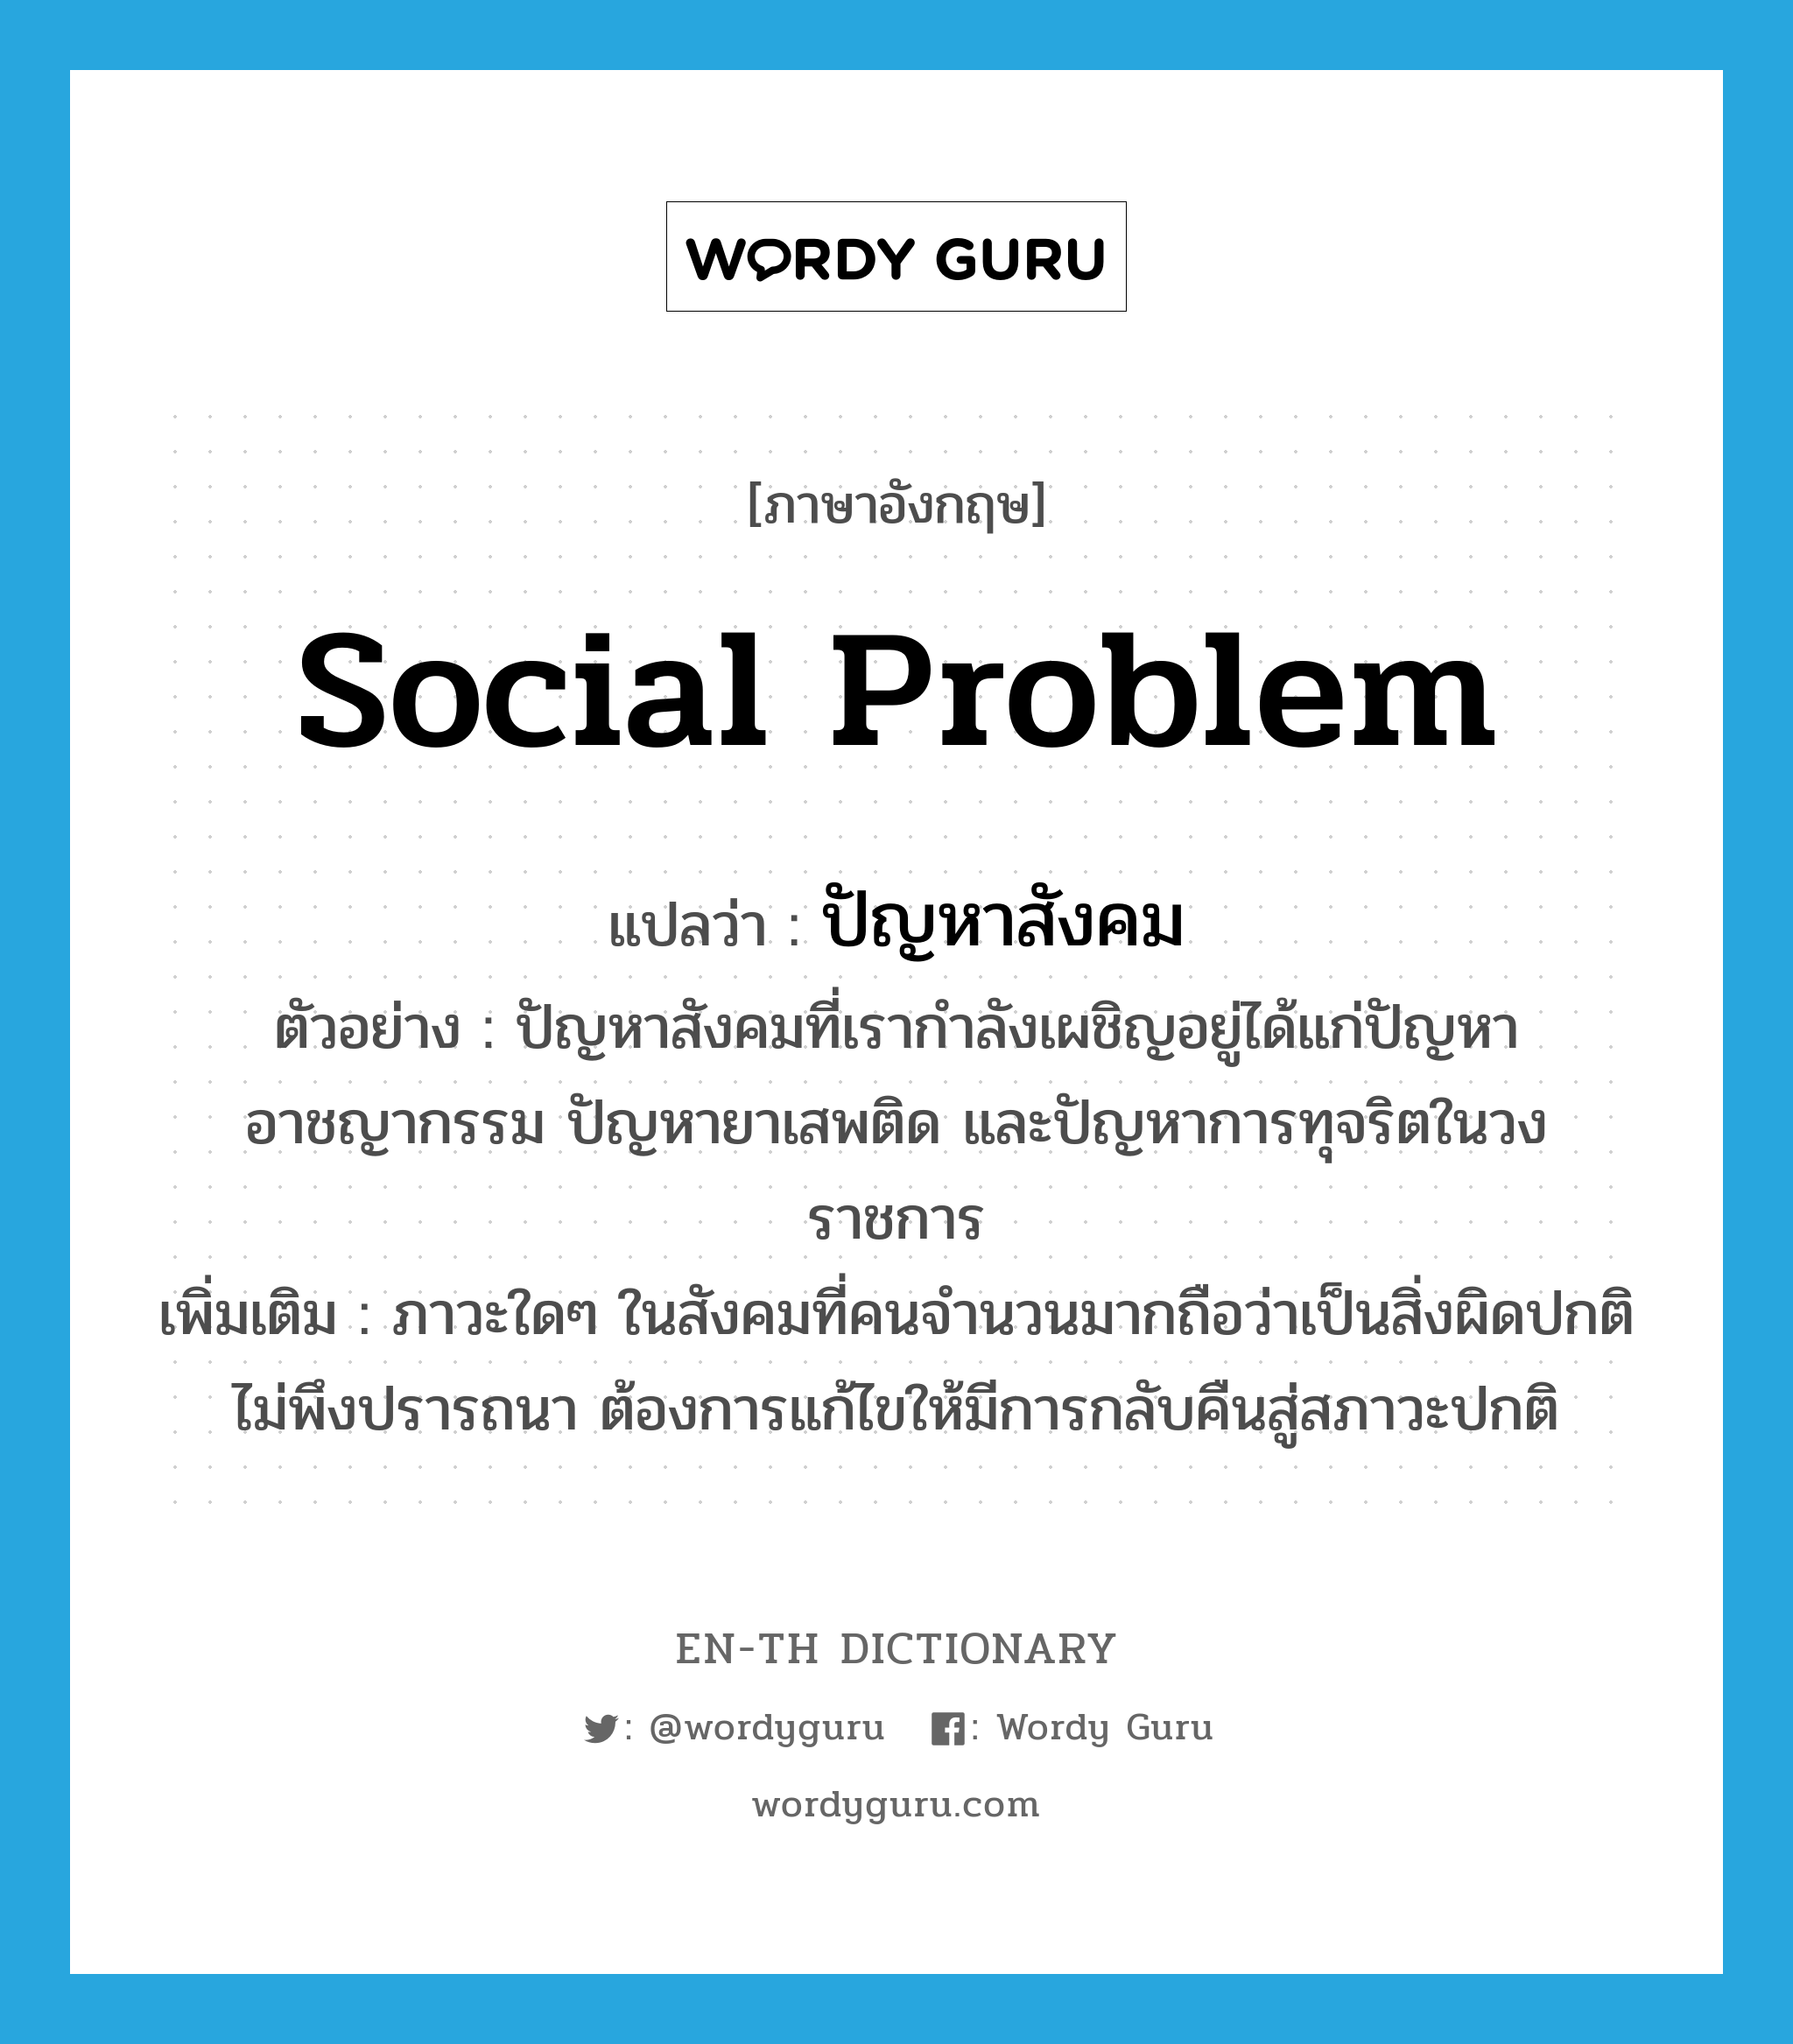 social problem แปลว่า?, คำศัพท์ภาษาอังกฤษ social problem แปลว่า ปัญหาสังคม ประเภท N ตัวอย่าง ปัญหาสังคมที่เรากำลังเผชิญอยู่ได้แก่ปัญหาอาชญากรรม ปัญหายาเสพติด และปัญหาการทุจริตในวงราชการ เพิ่มเติม ภาวะใดๆ ในสังคมที่คนจำนวนมากถือว่าเป็นสิ่งผิดปกติ ไม่พึงปรารถนา ต้องการแก้ไขให้มีการกลับคืนสู่สภาวะปกติ หมวด N